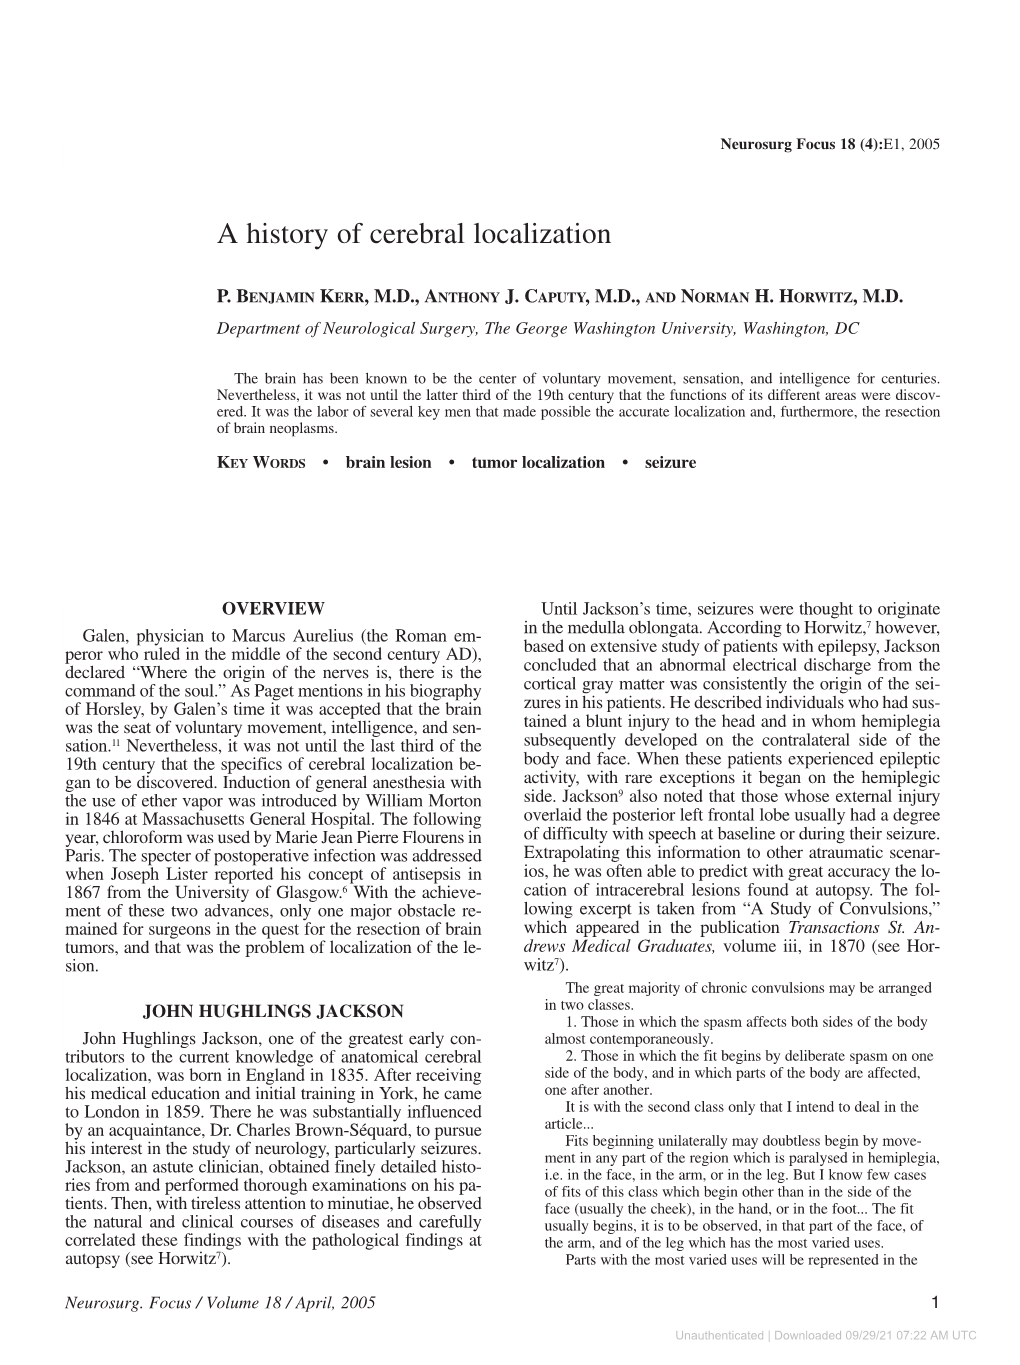 A History of Cerebral Localization